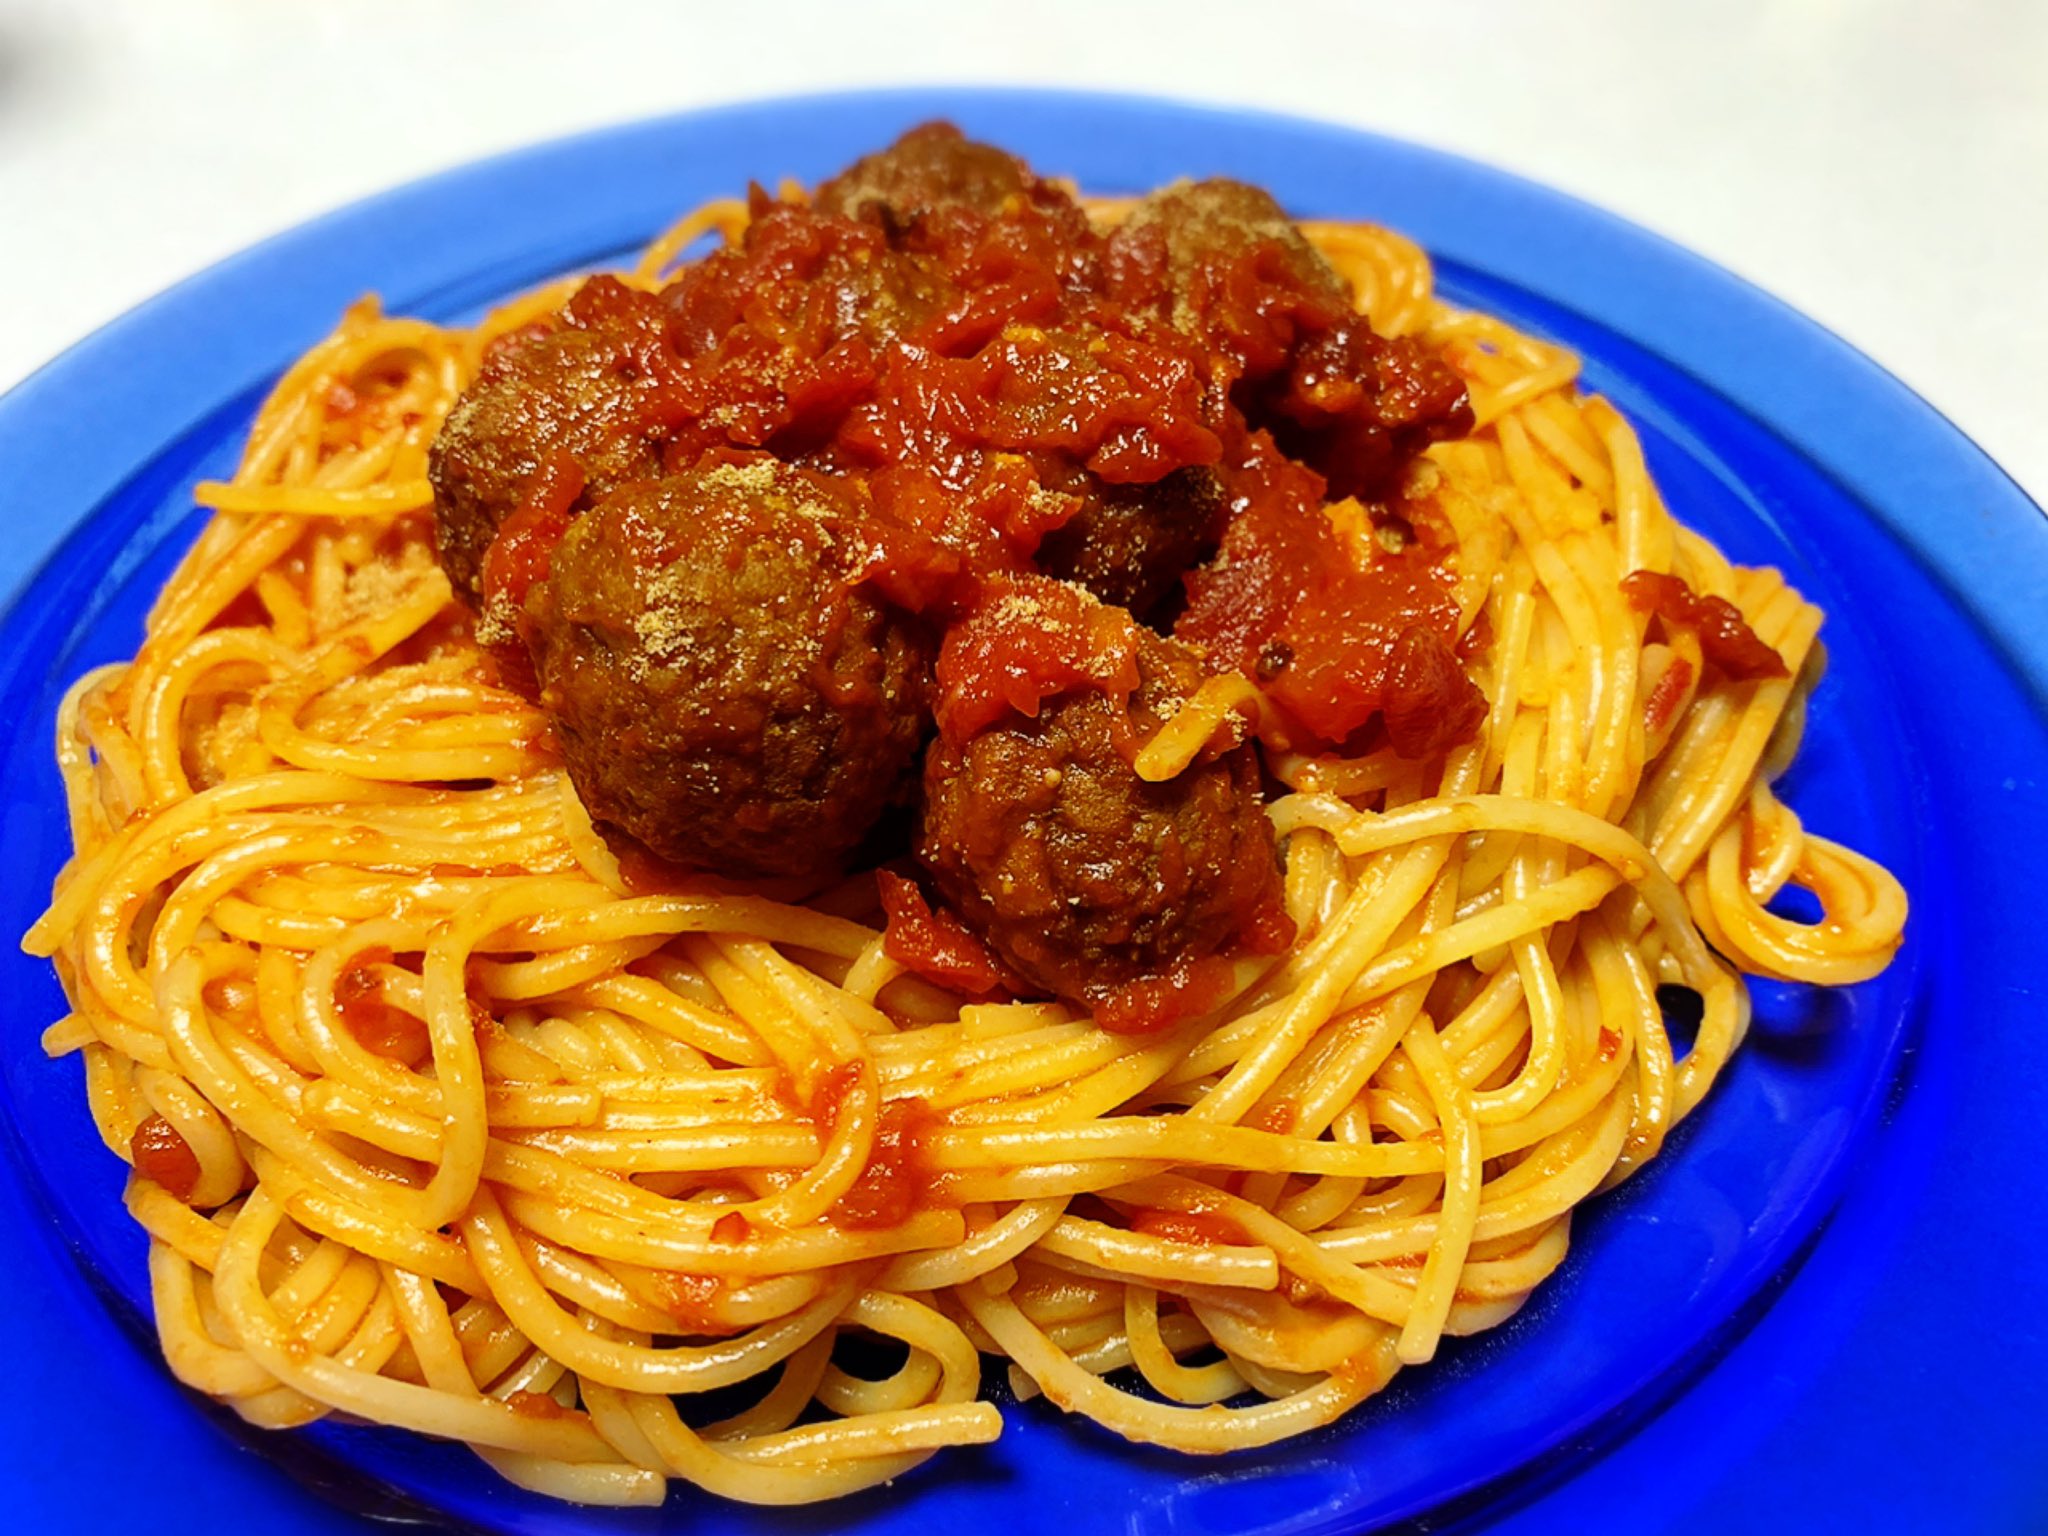 Nya Spaghetti With Meatballs 英語表記にしたのは コレは決して カリオストロの城 ではなく わんわん物語 のメニューだからである 自宅めし パスタ ミートボールパスタ ミートボールスパゲッティ Spaghettiwithmeatballs わんわん物語